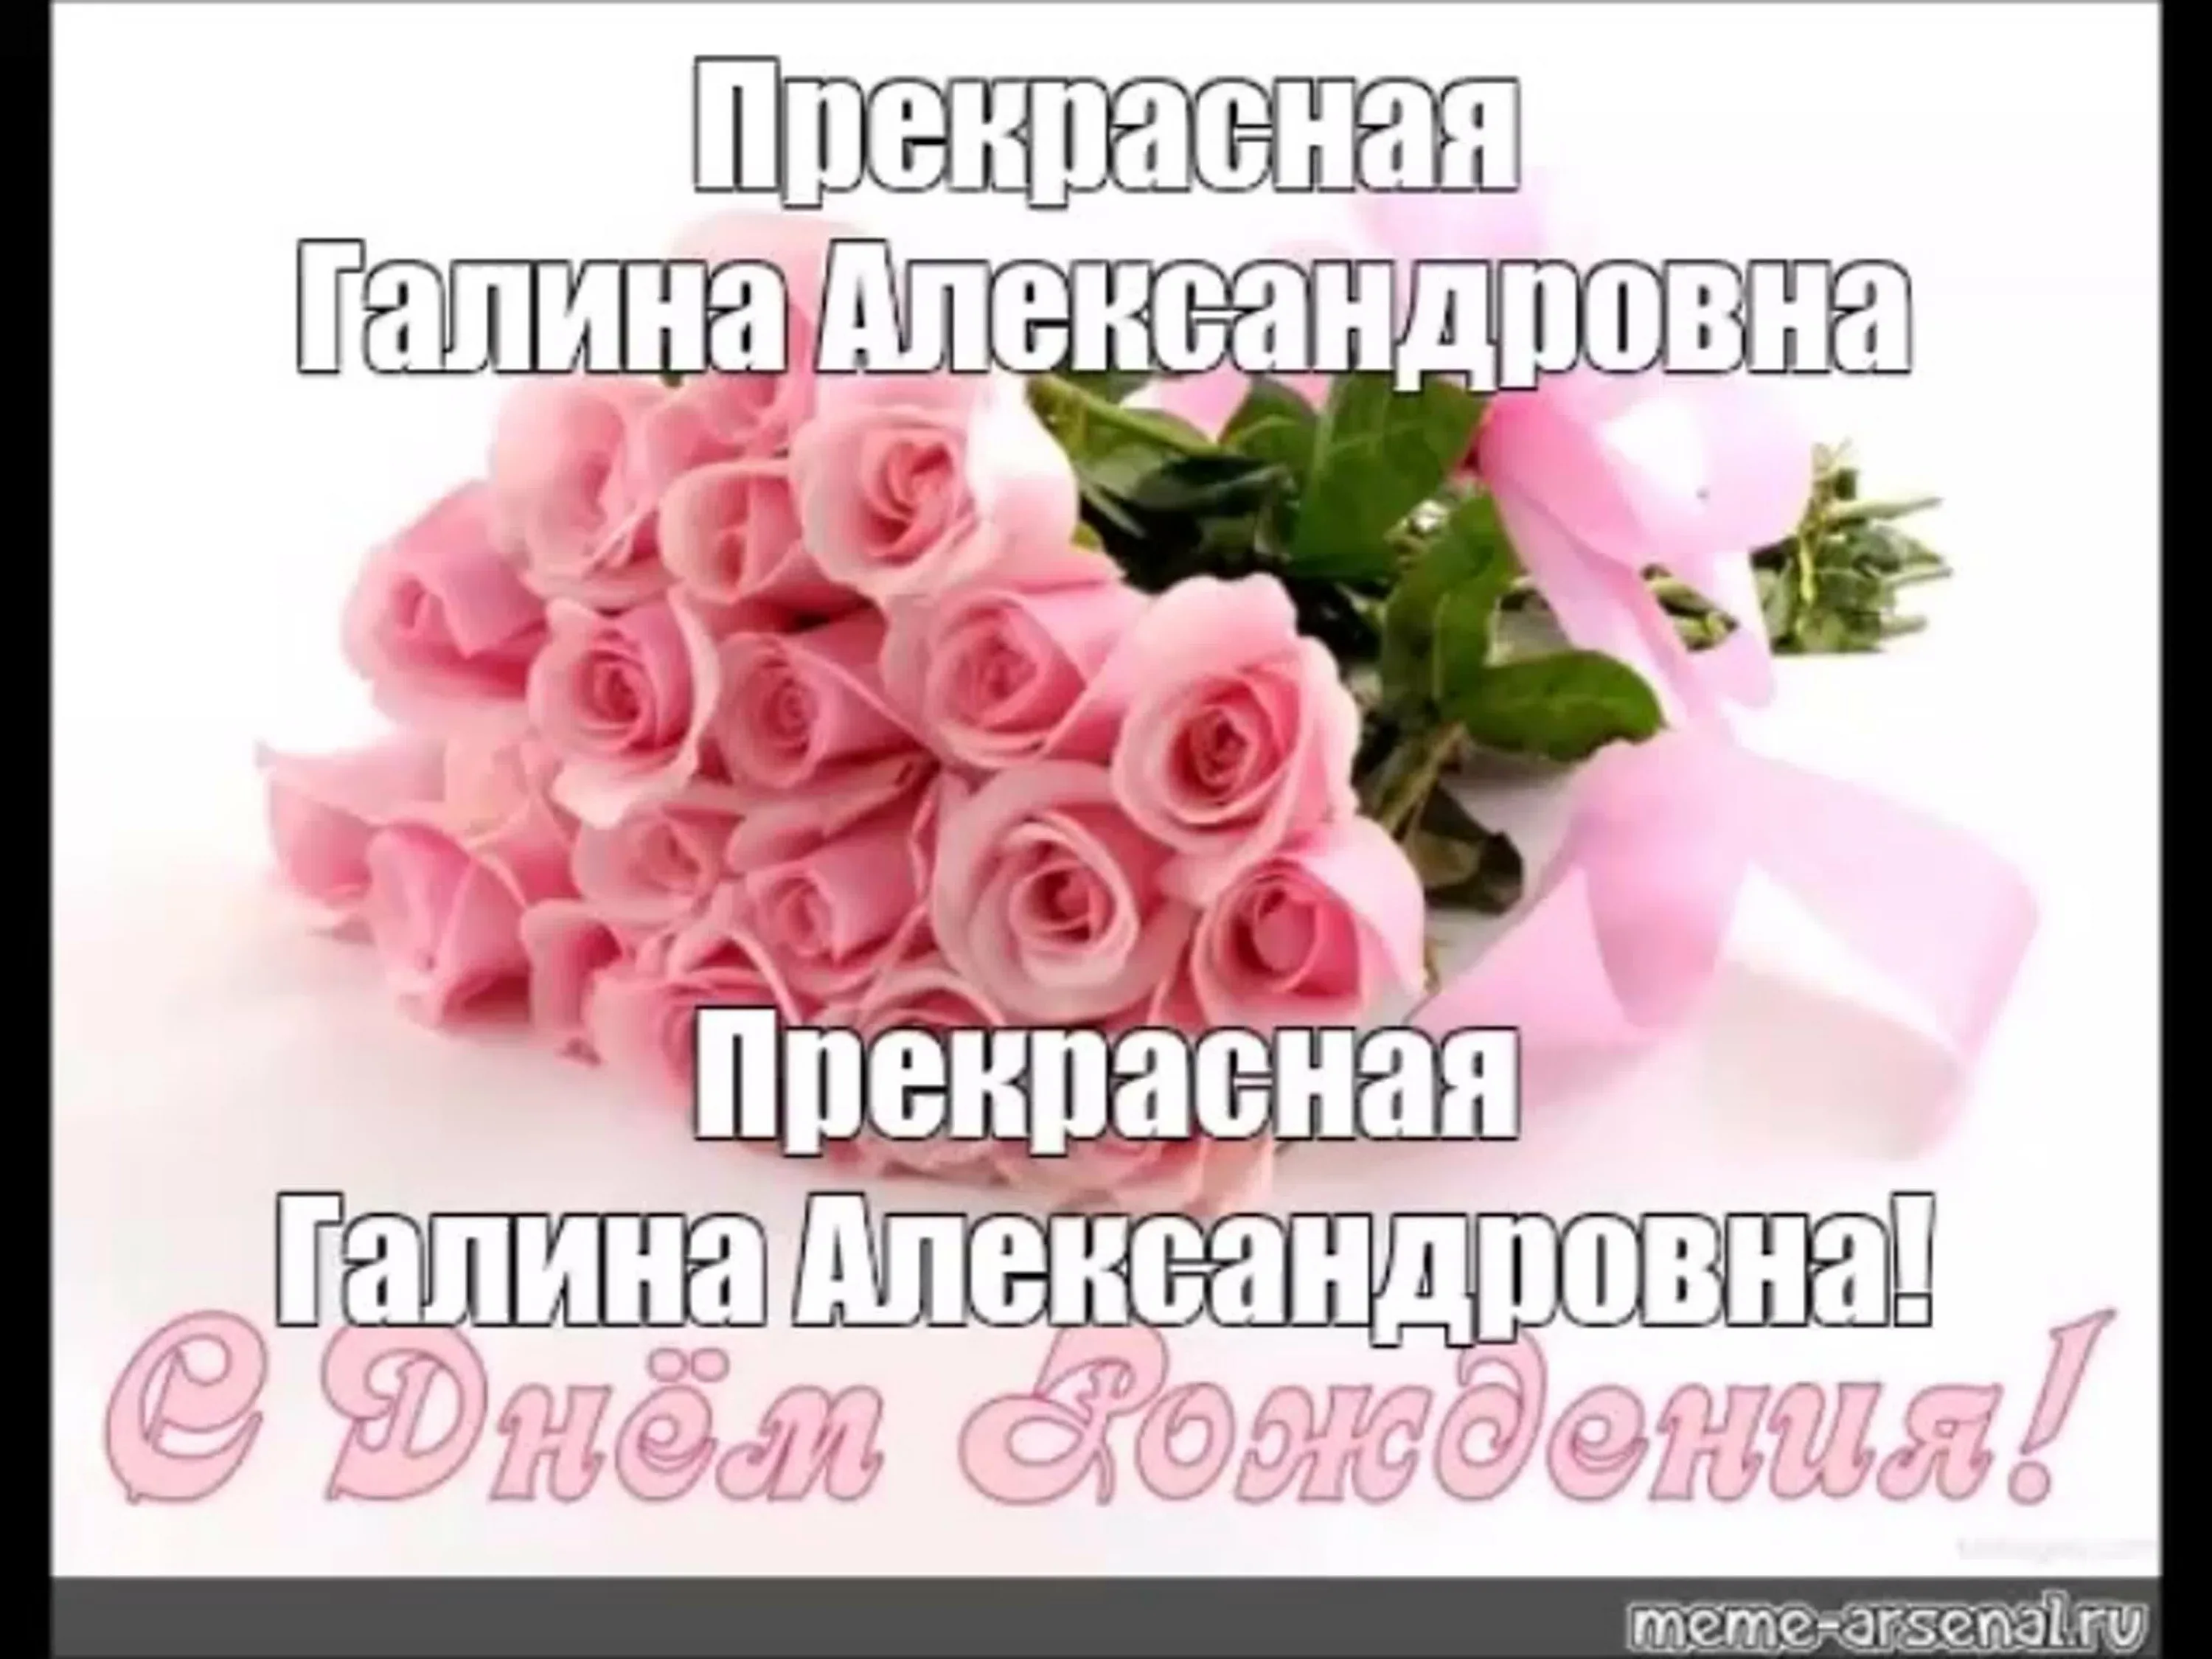 Поздравить с днем рождения на украинском. Поздравление с помолвкой. З днем народження. Поздравление с обручением пожелания. Поздравление с помоловко.